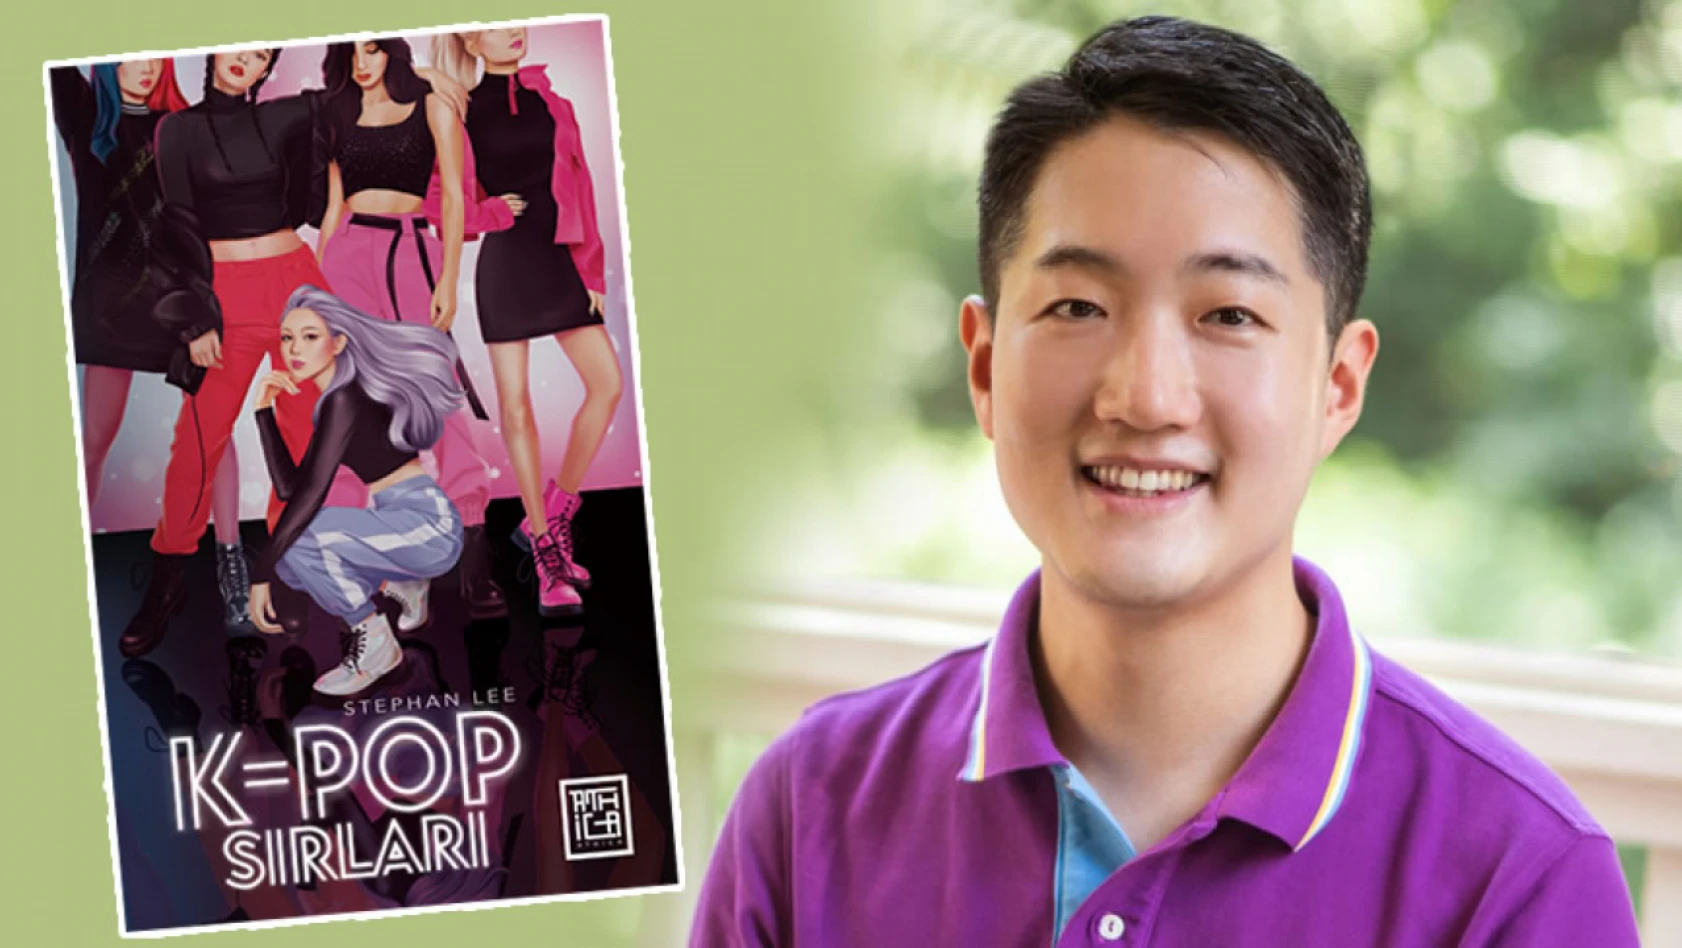 Stephan Lee'nin K-Pop Sırları kitabı, Athica Yayınları'ndan çıktı